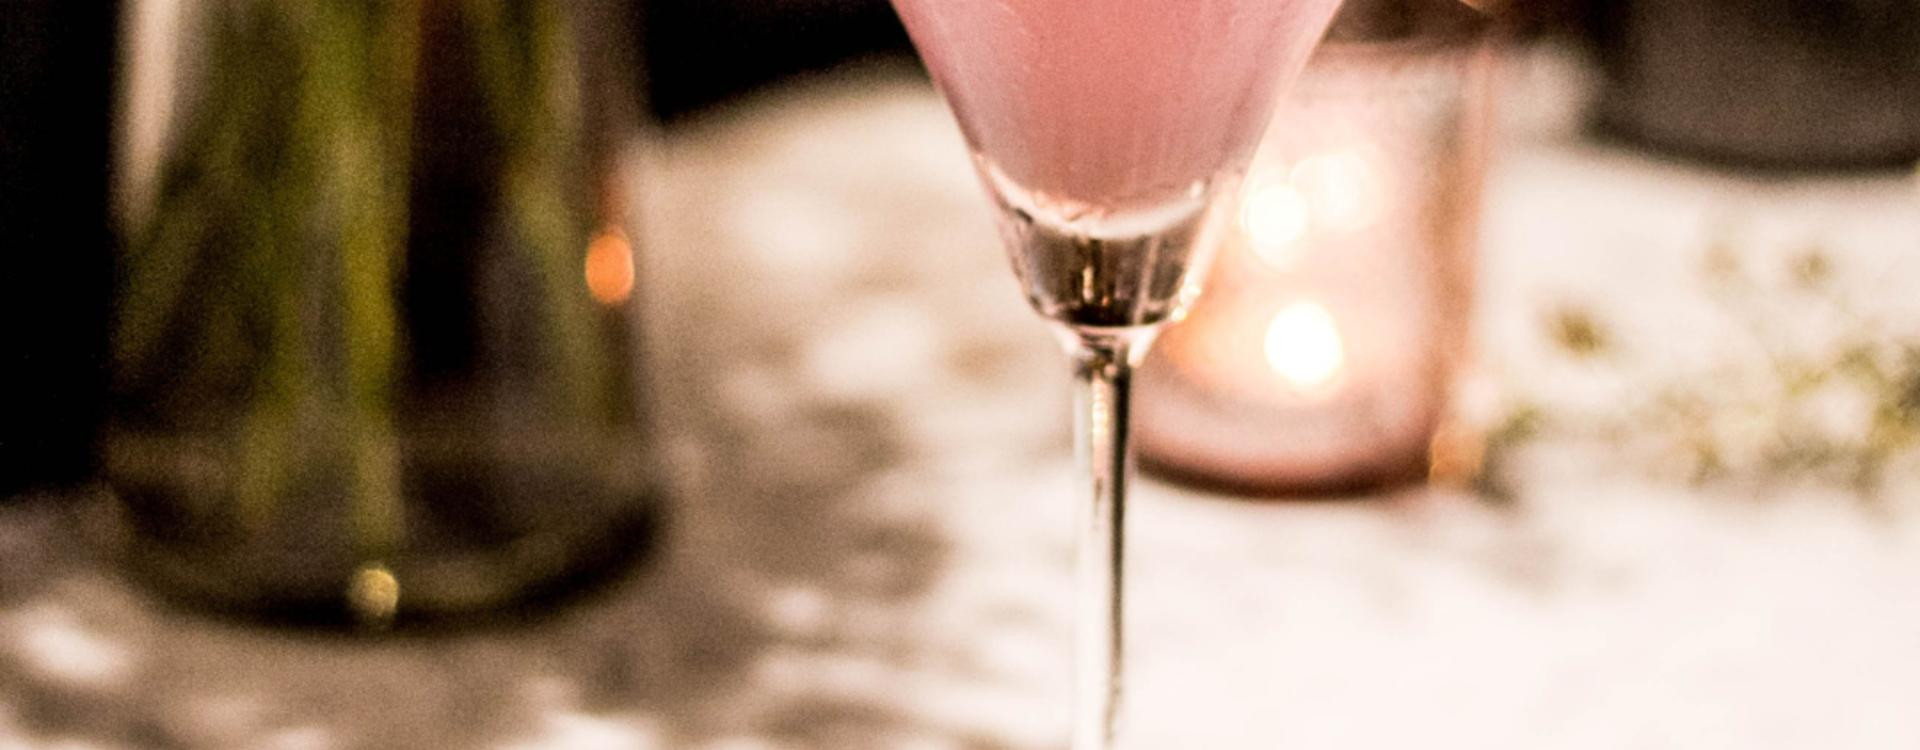 Cocktail rosie